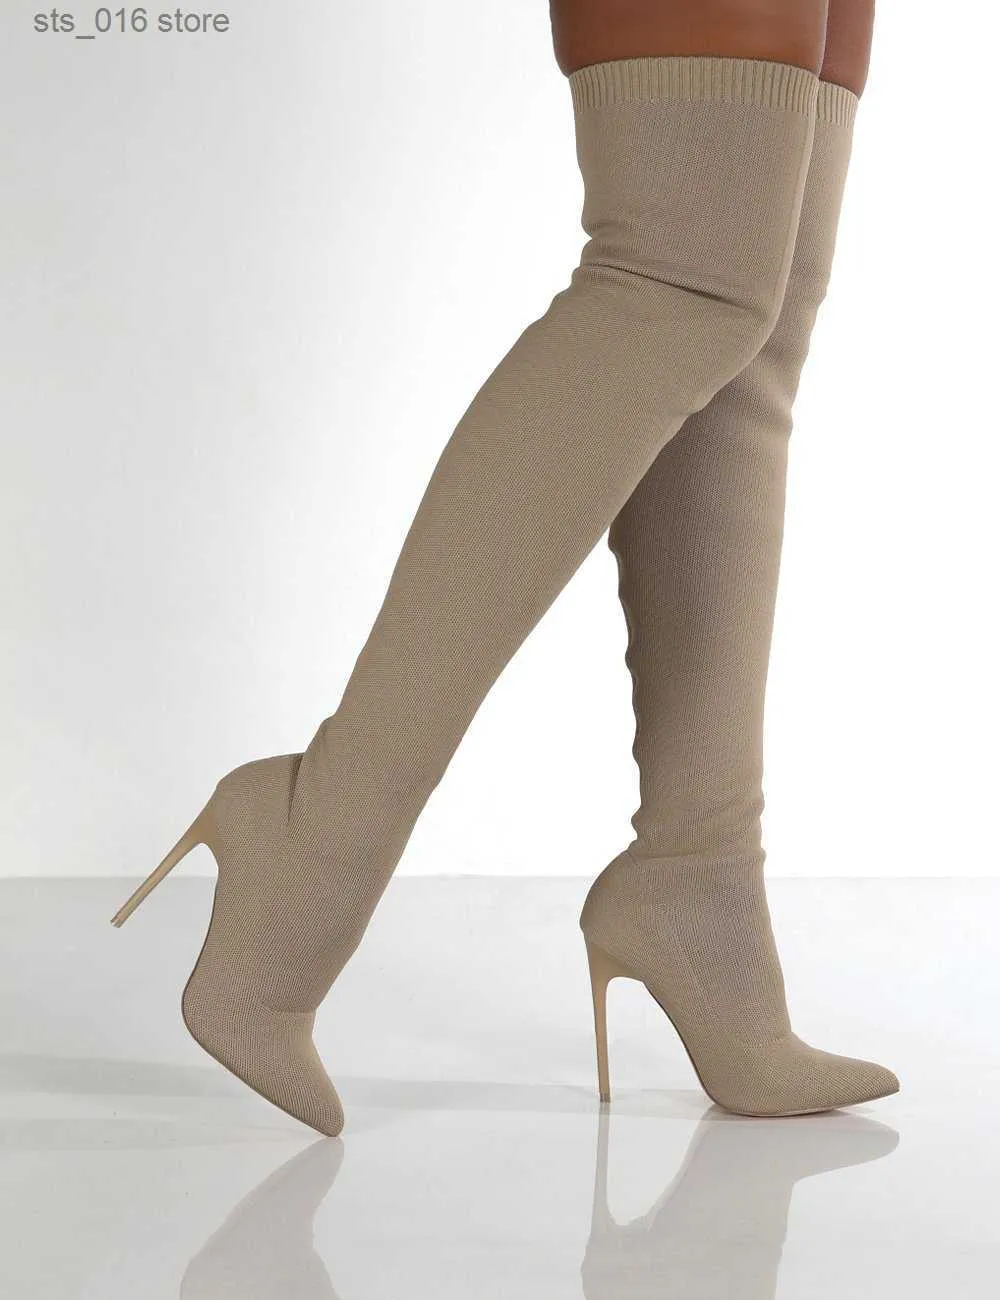 Spitzenschuhe Schuhe neue sexy hohe Frauen knieleuter Winter warme Größe 35-43 2021 Fashion Stiefel T230824 898